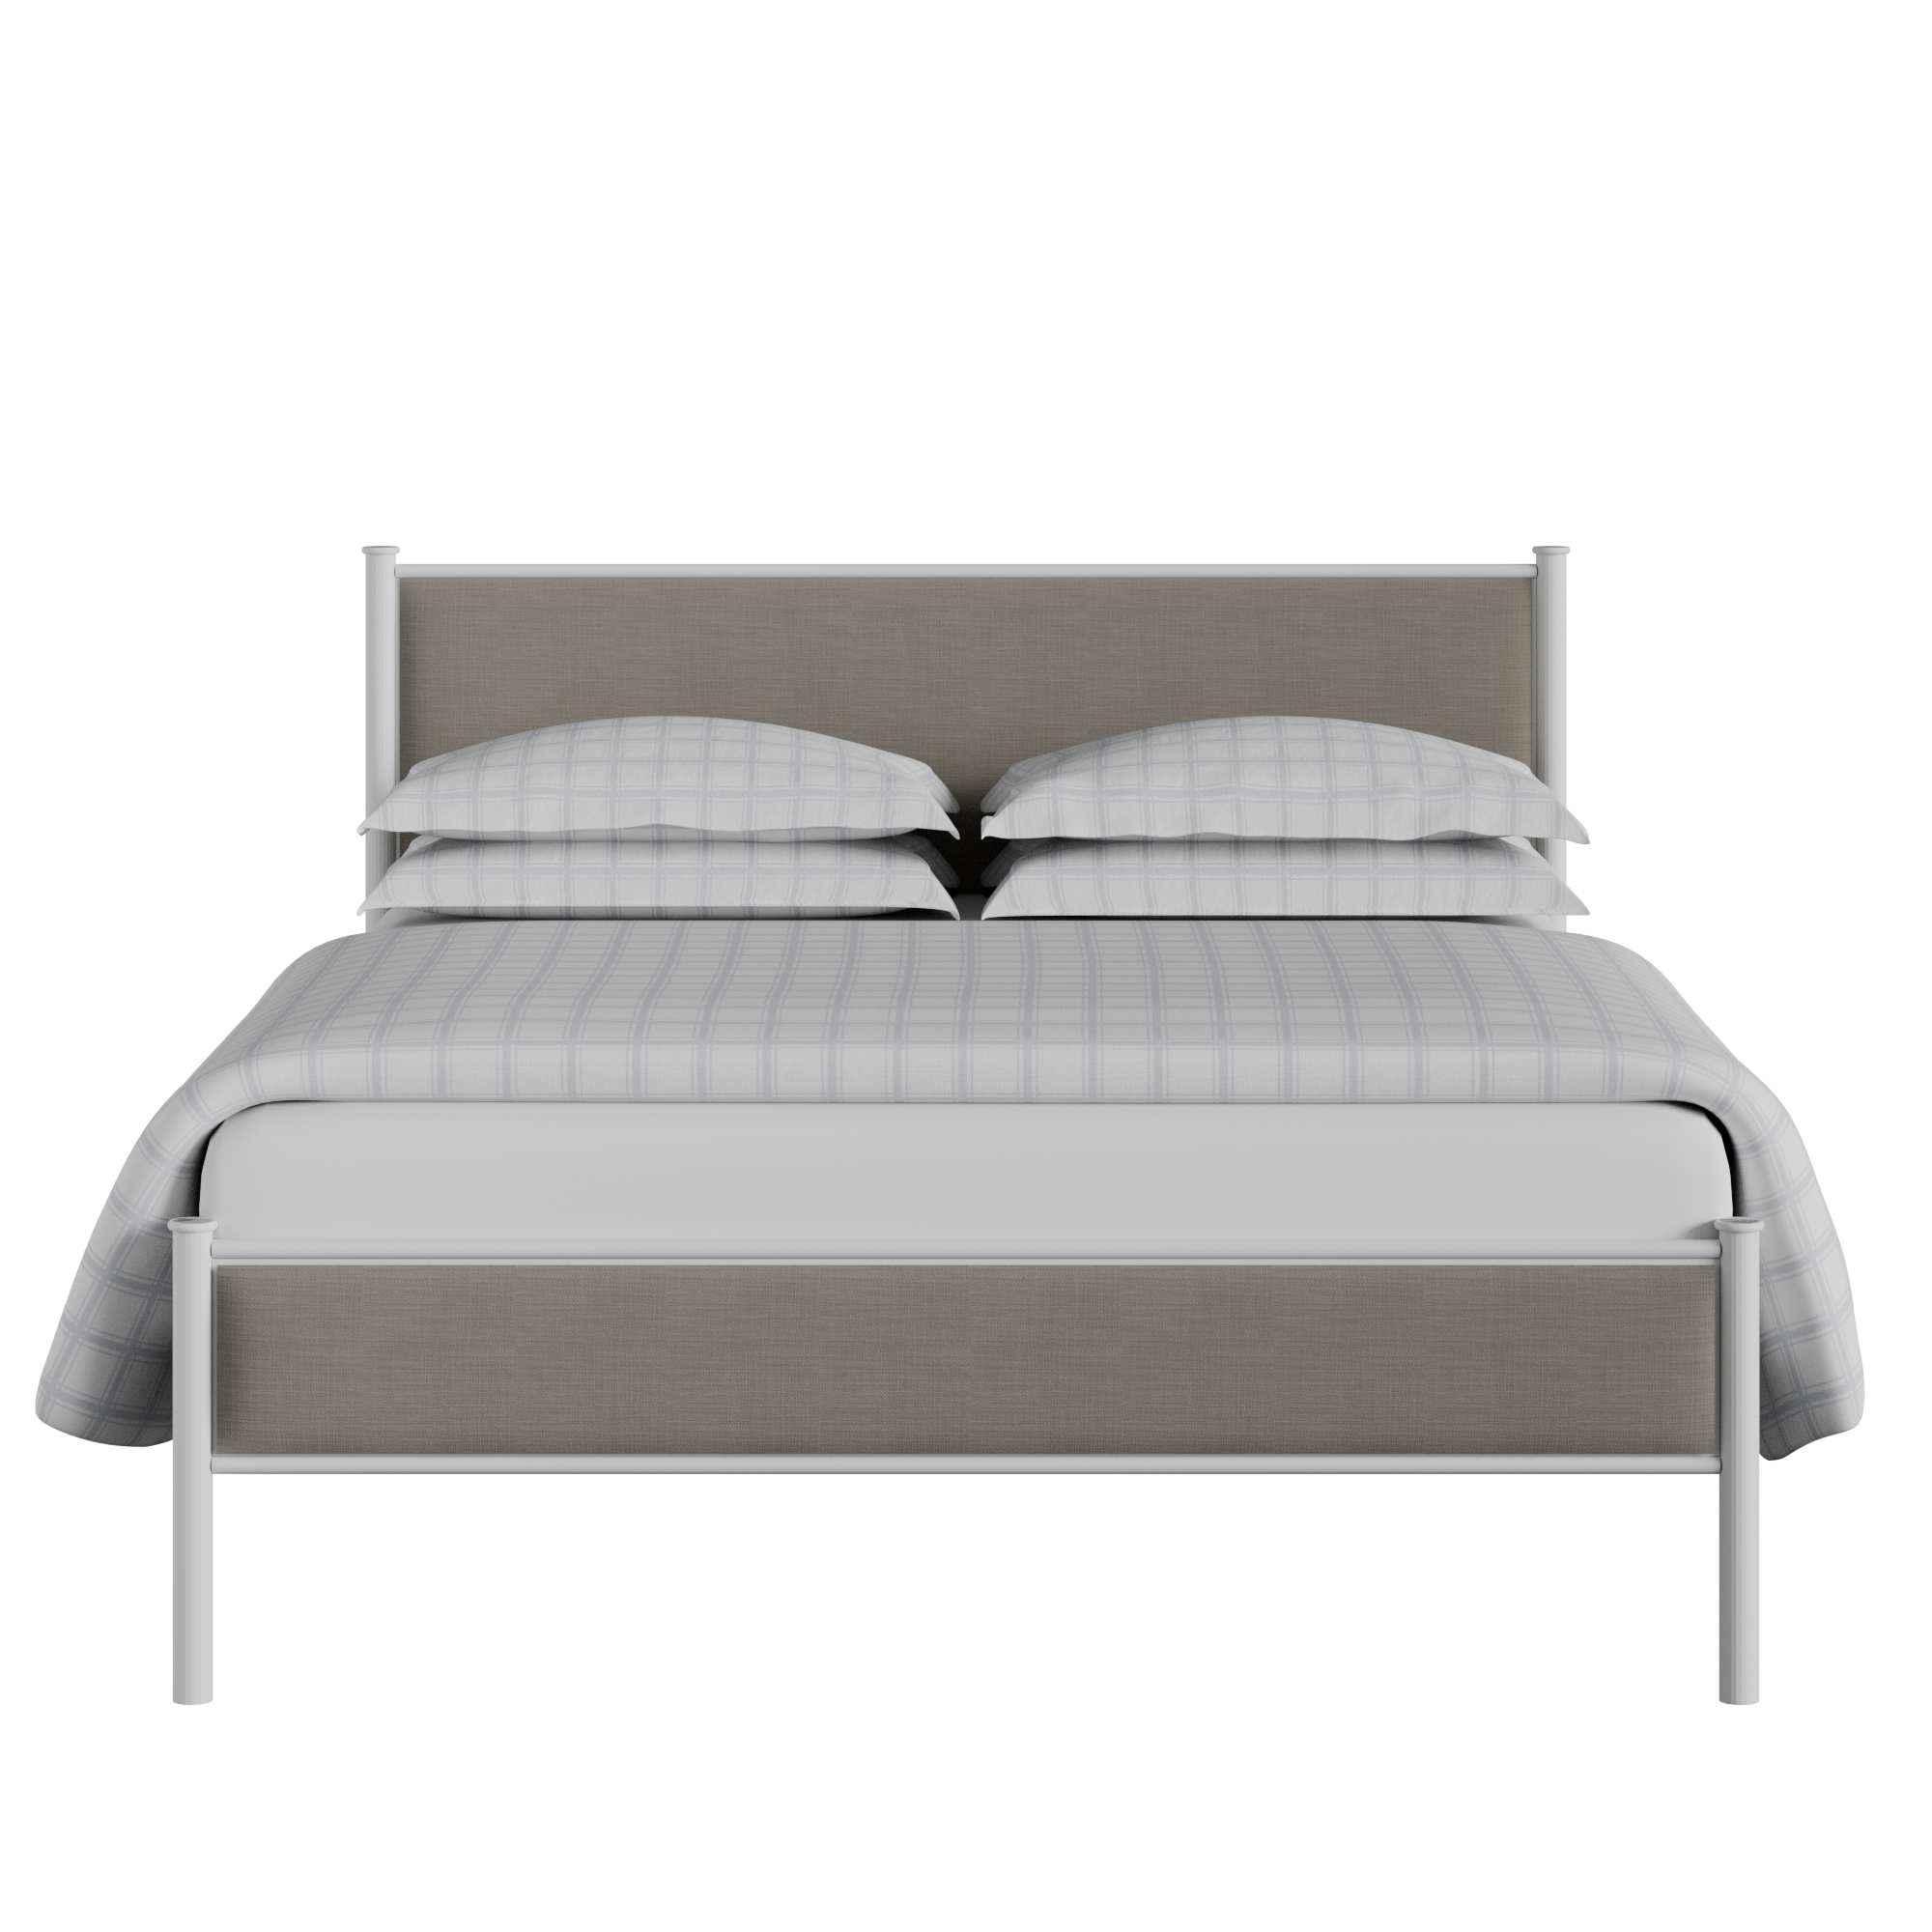 Brest cama de metal en blanco con tela gris